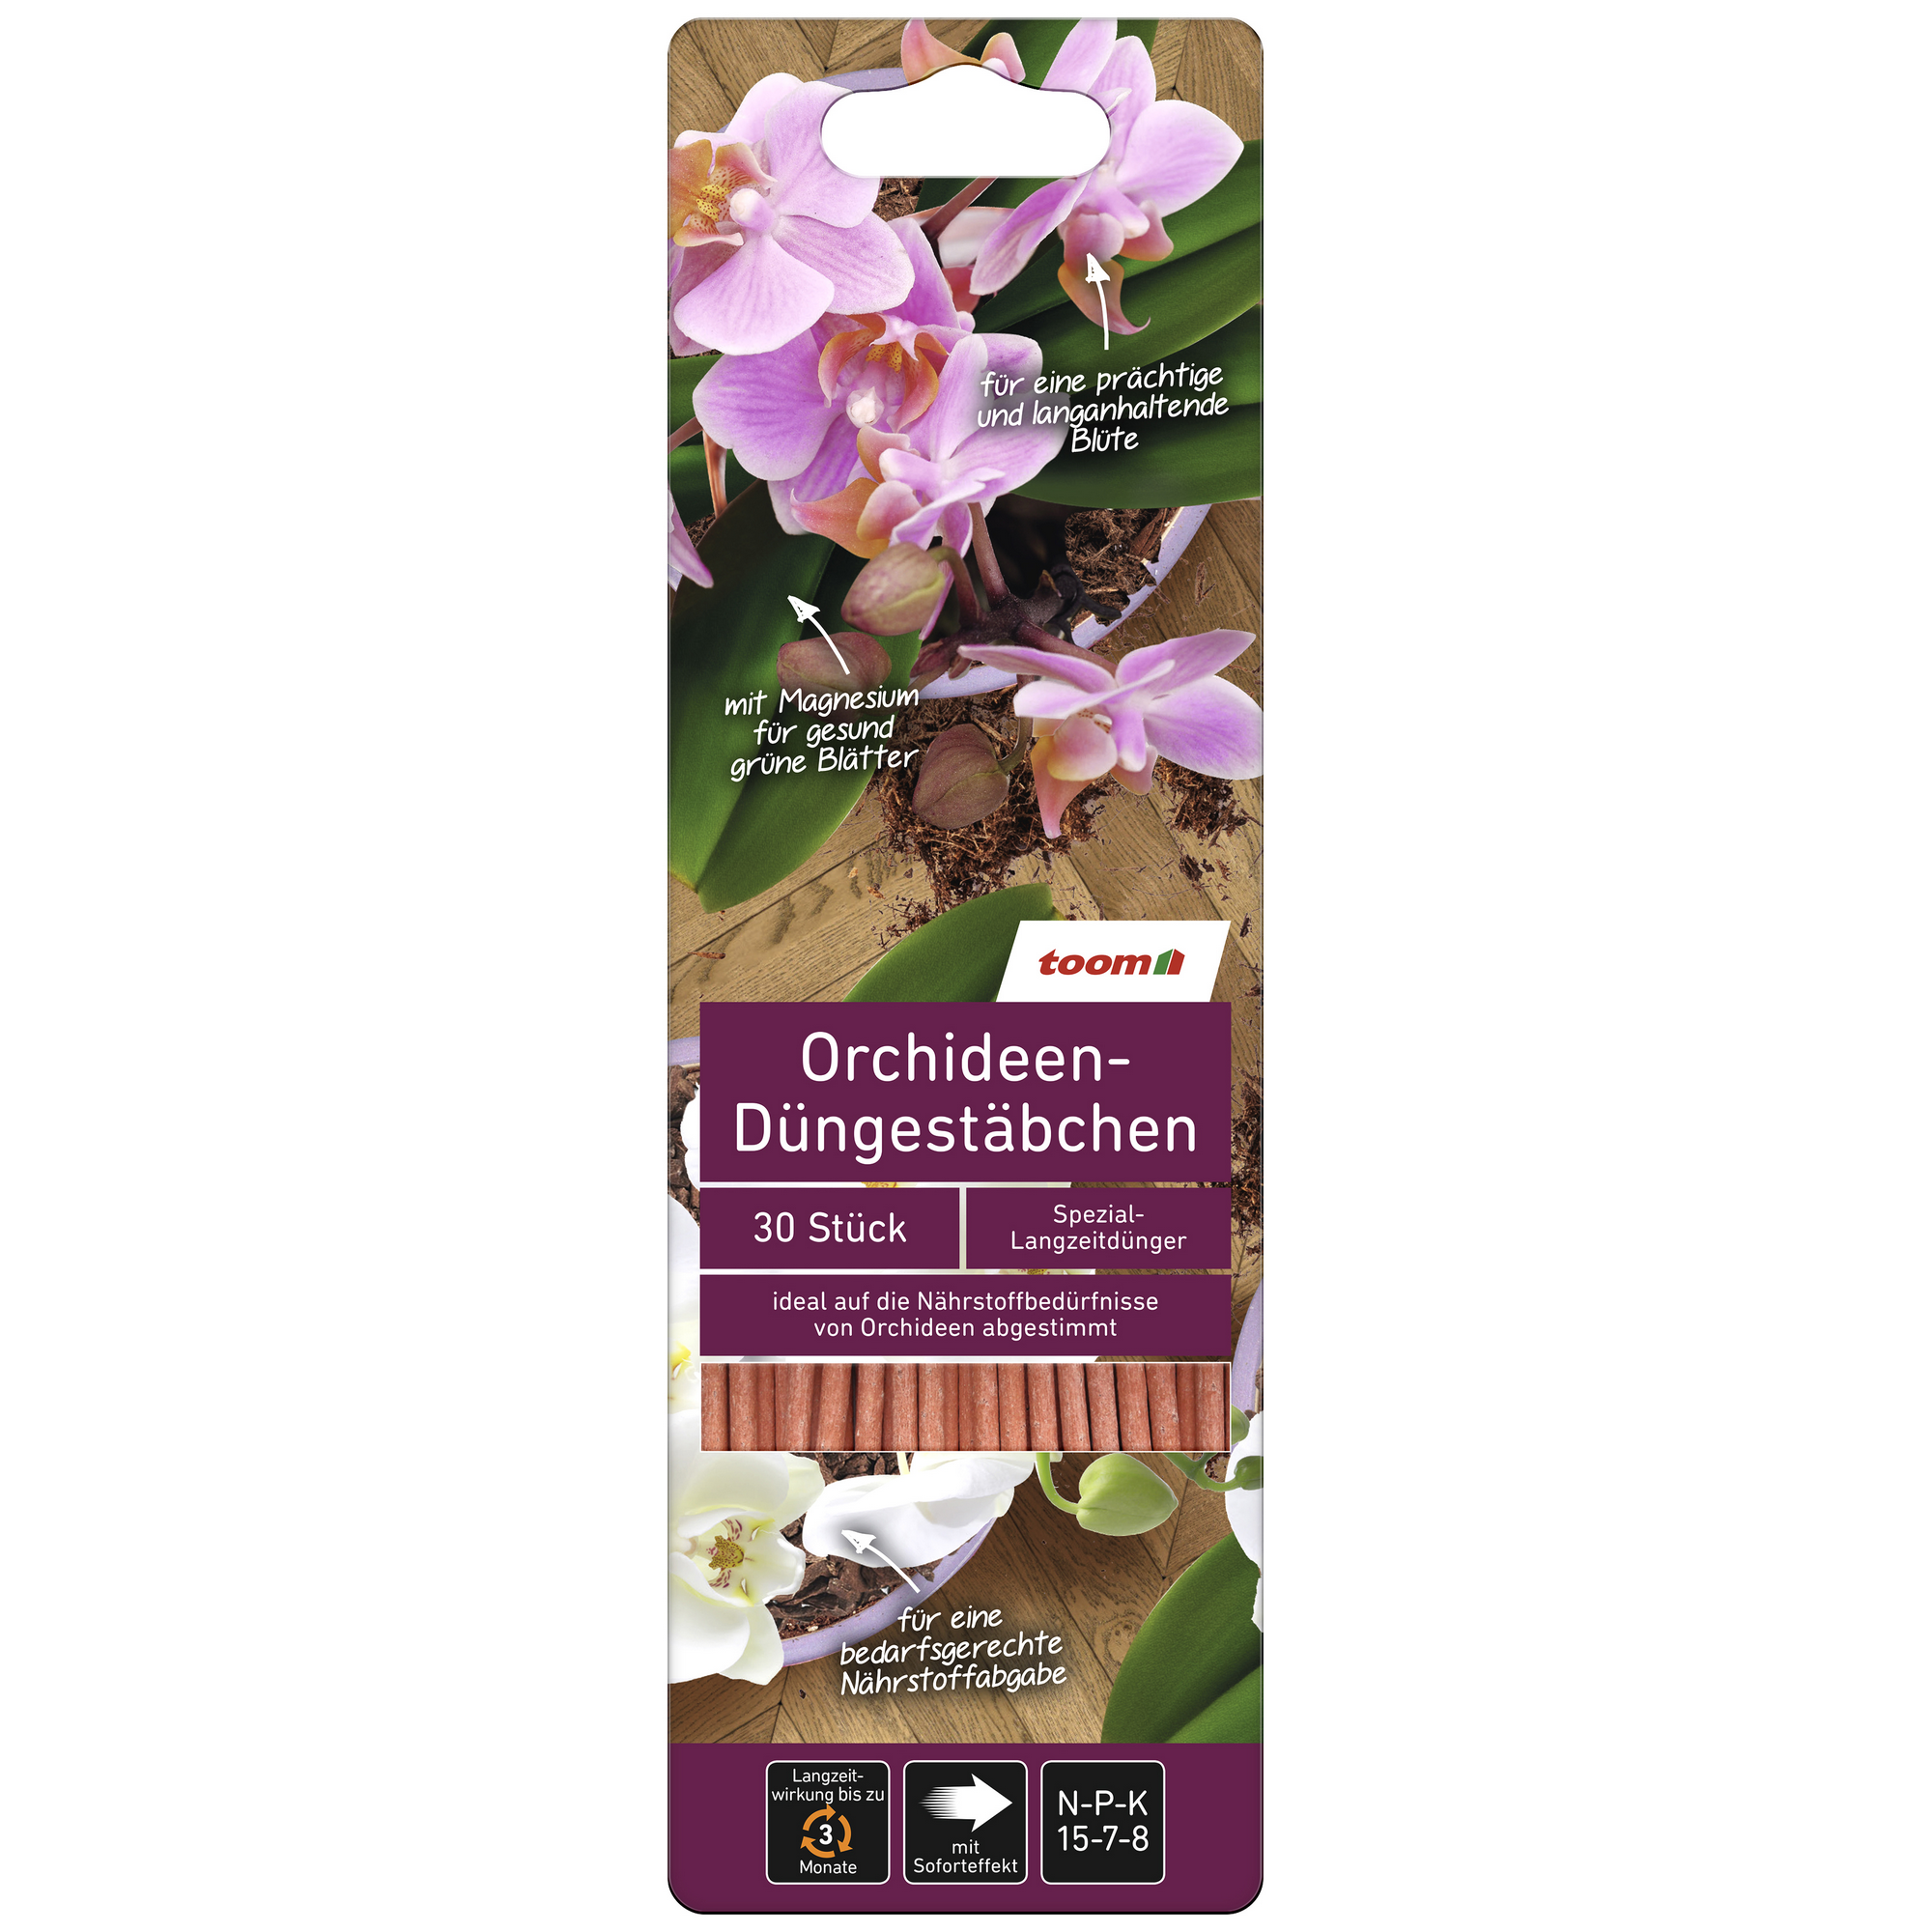 Orchideen-Düngestäbchen 30 Stück + product picture